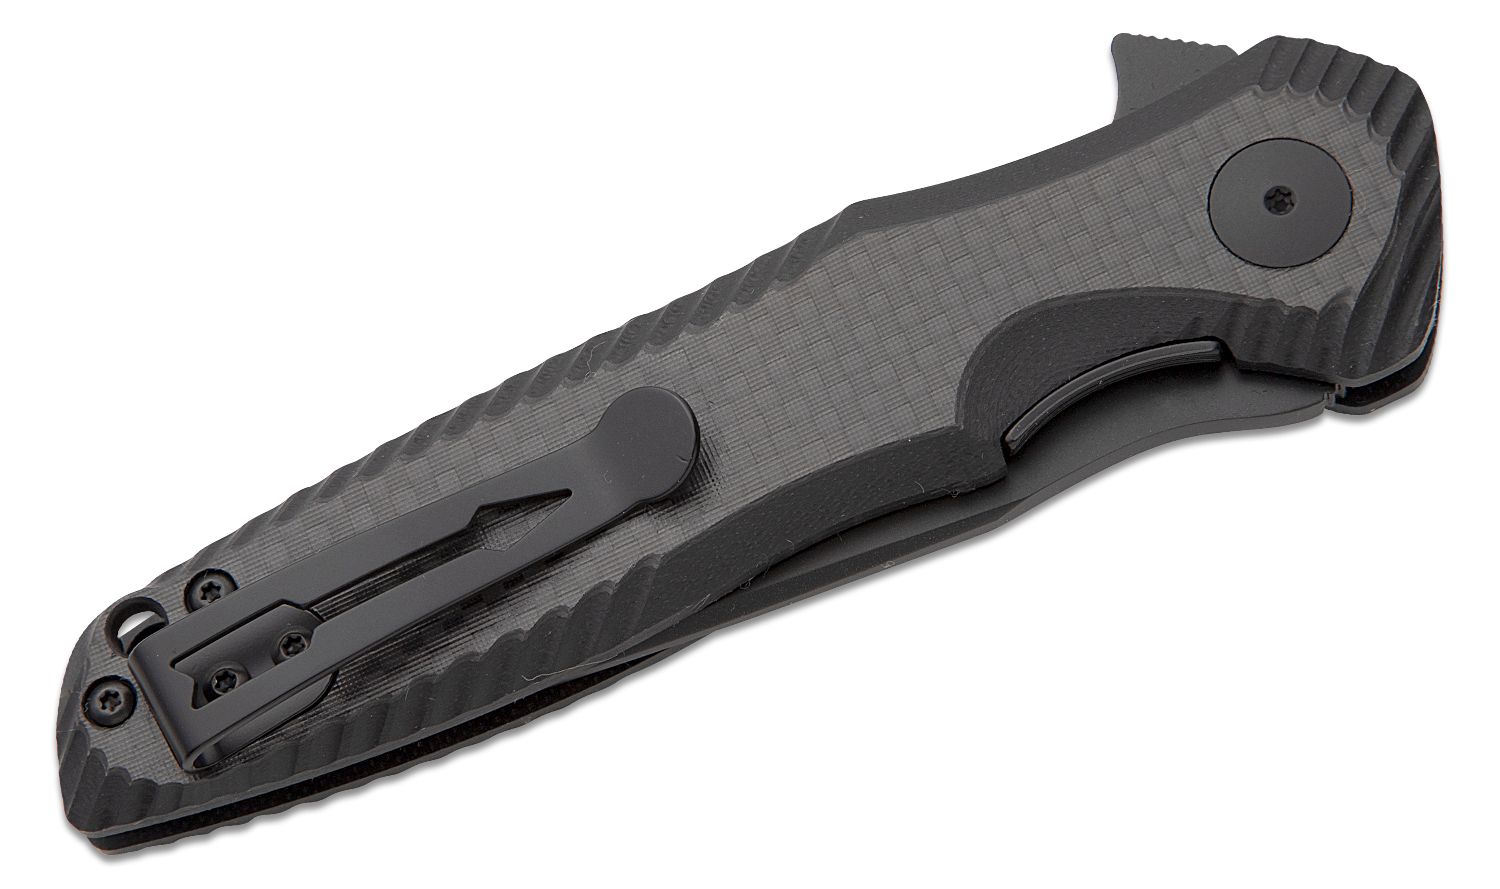 Blackspur High Carbon Steel Utility Knife Blades - Pack of 24